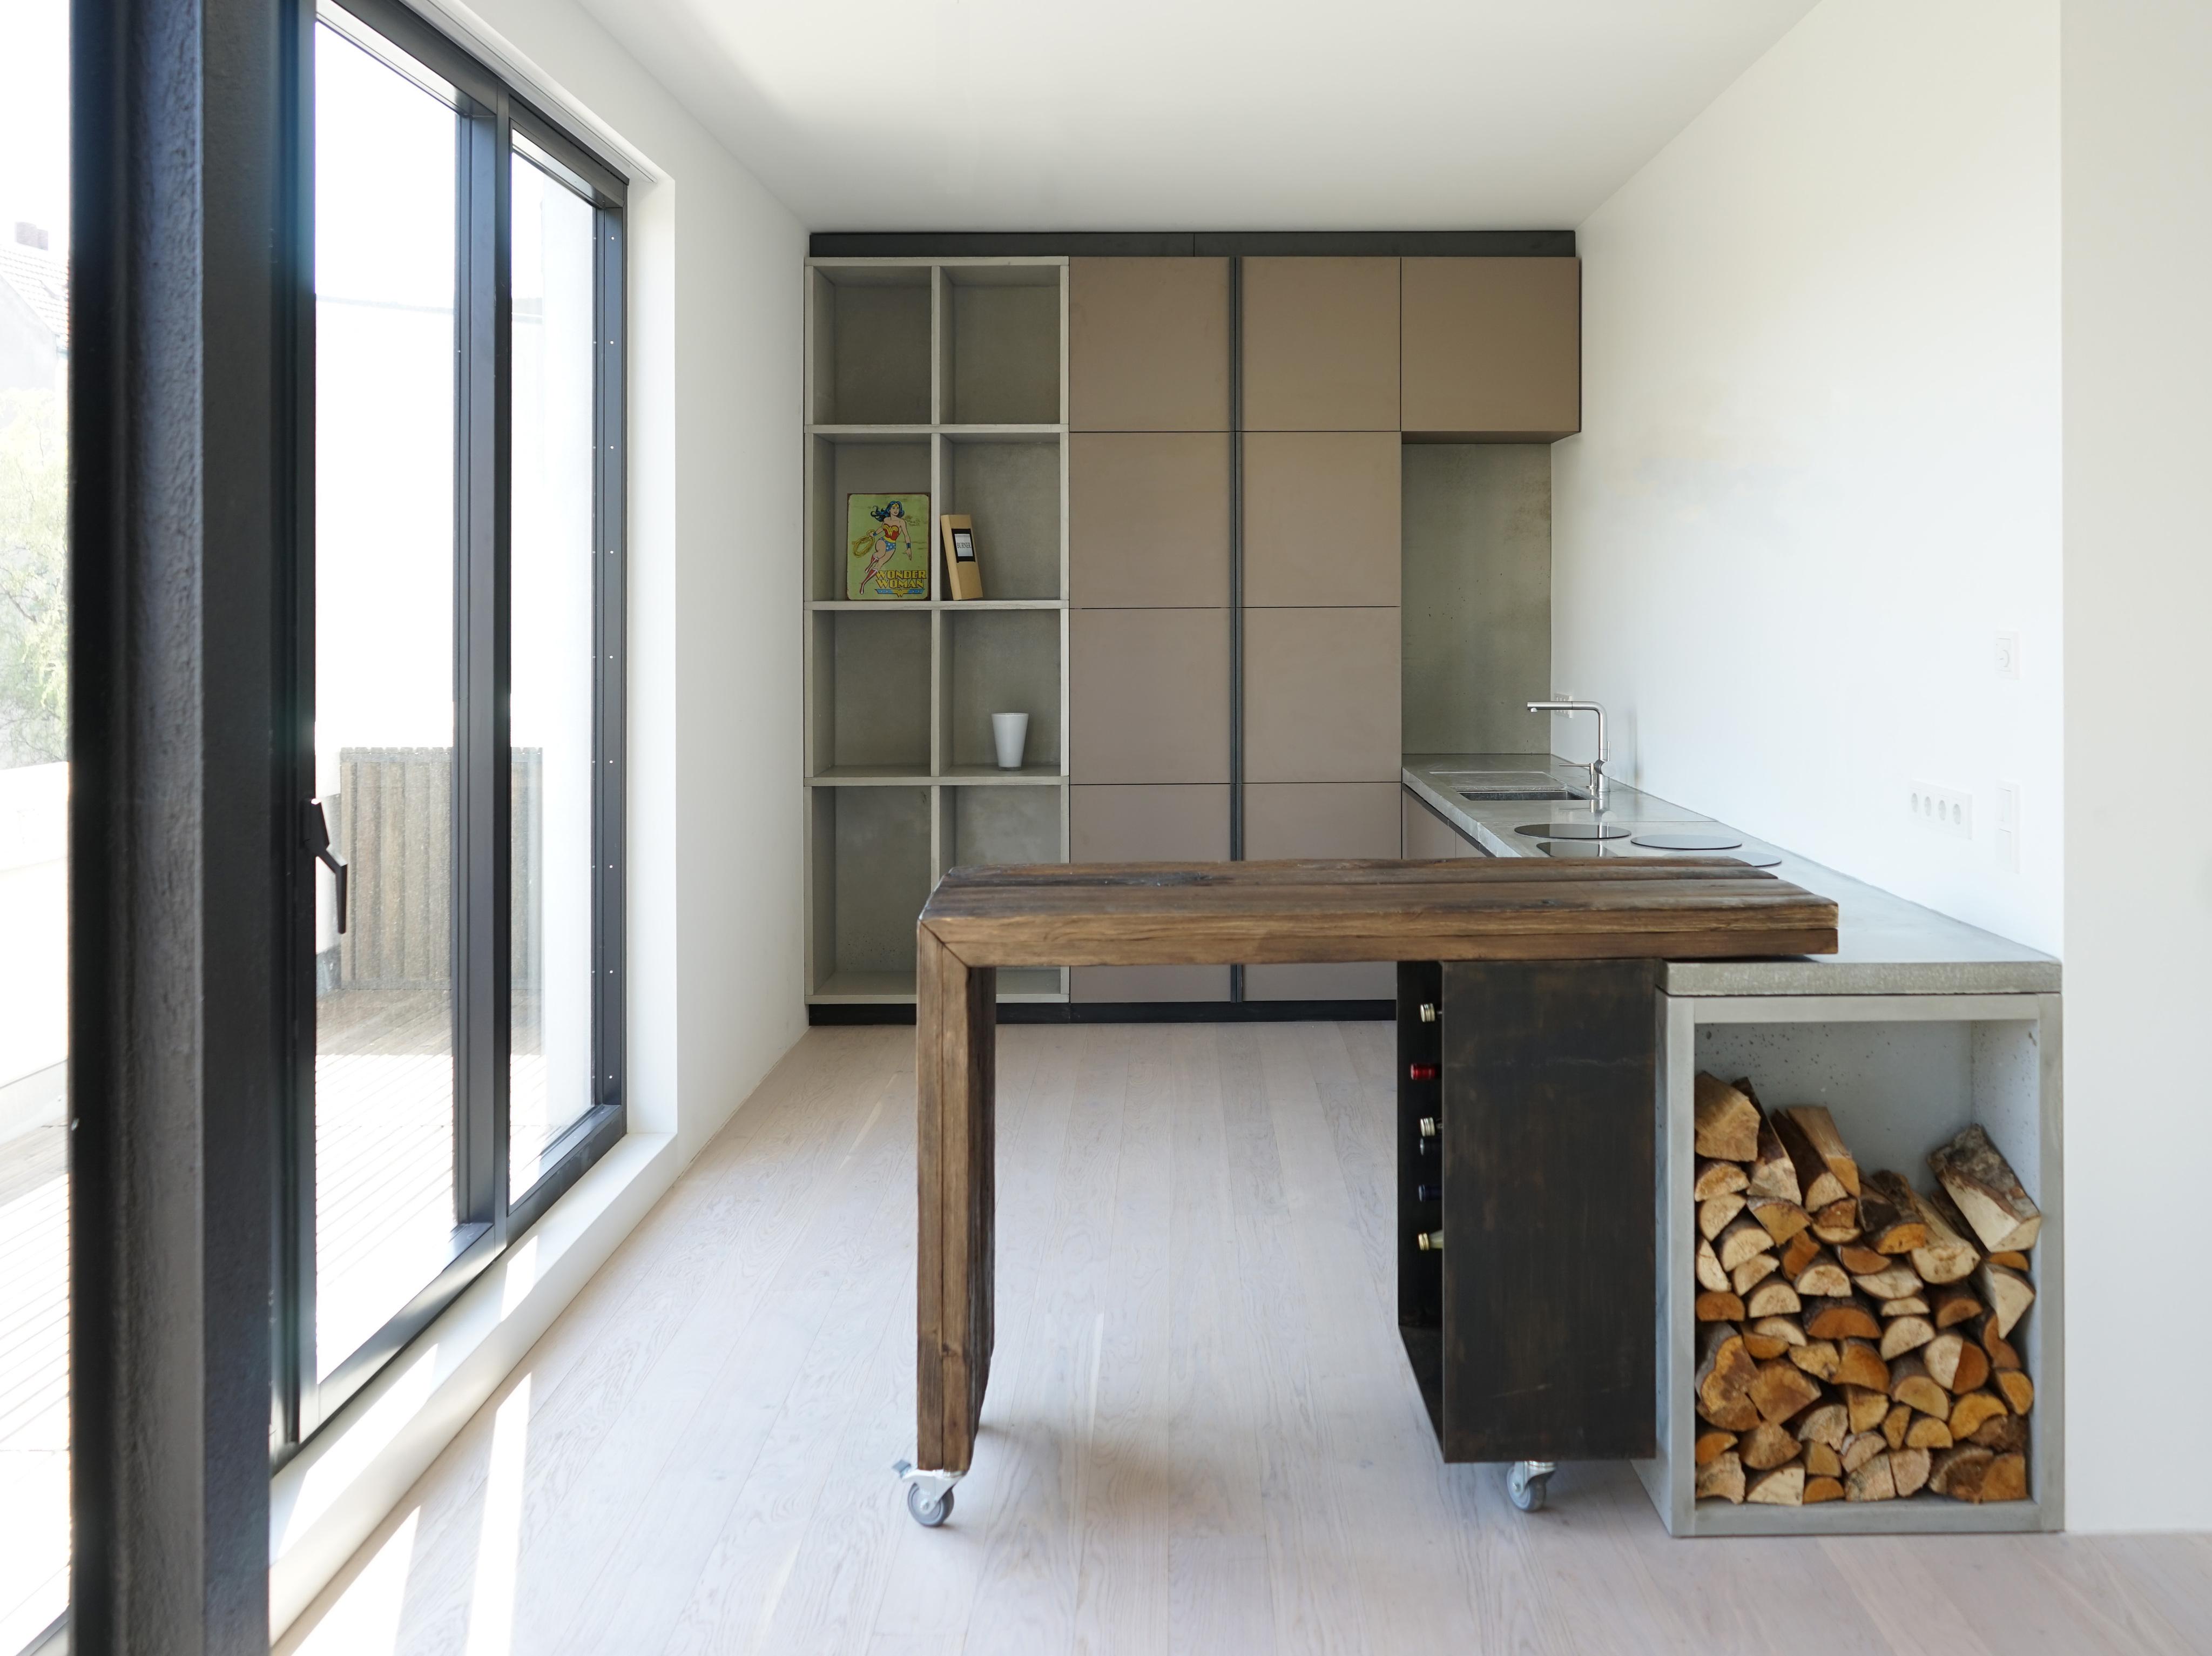 Sichtbetonküche mit verschiebbarer Bar #küche #minimalistisch #lformküche ©koopX architekten